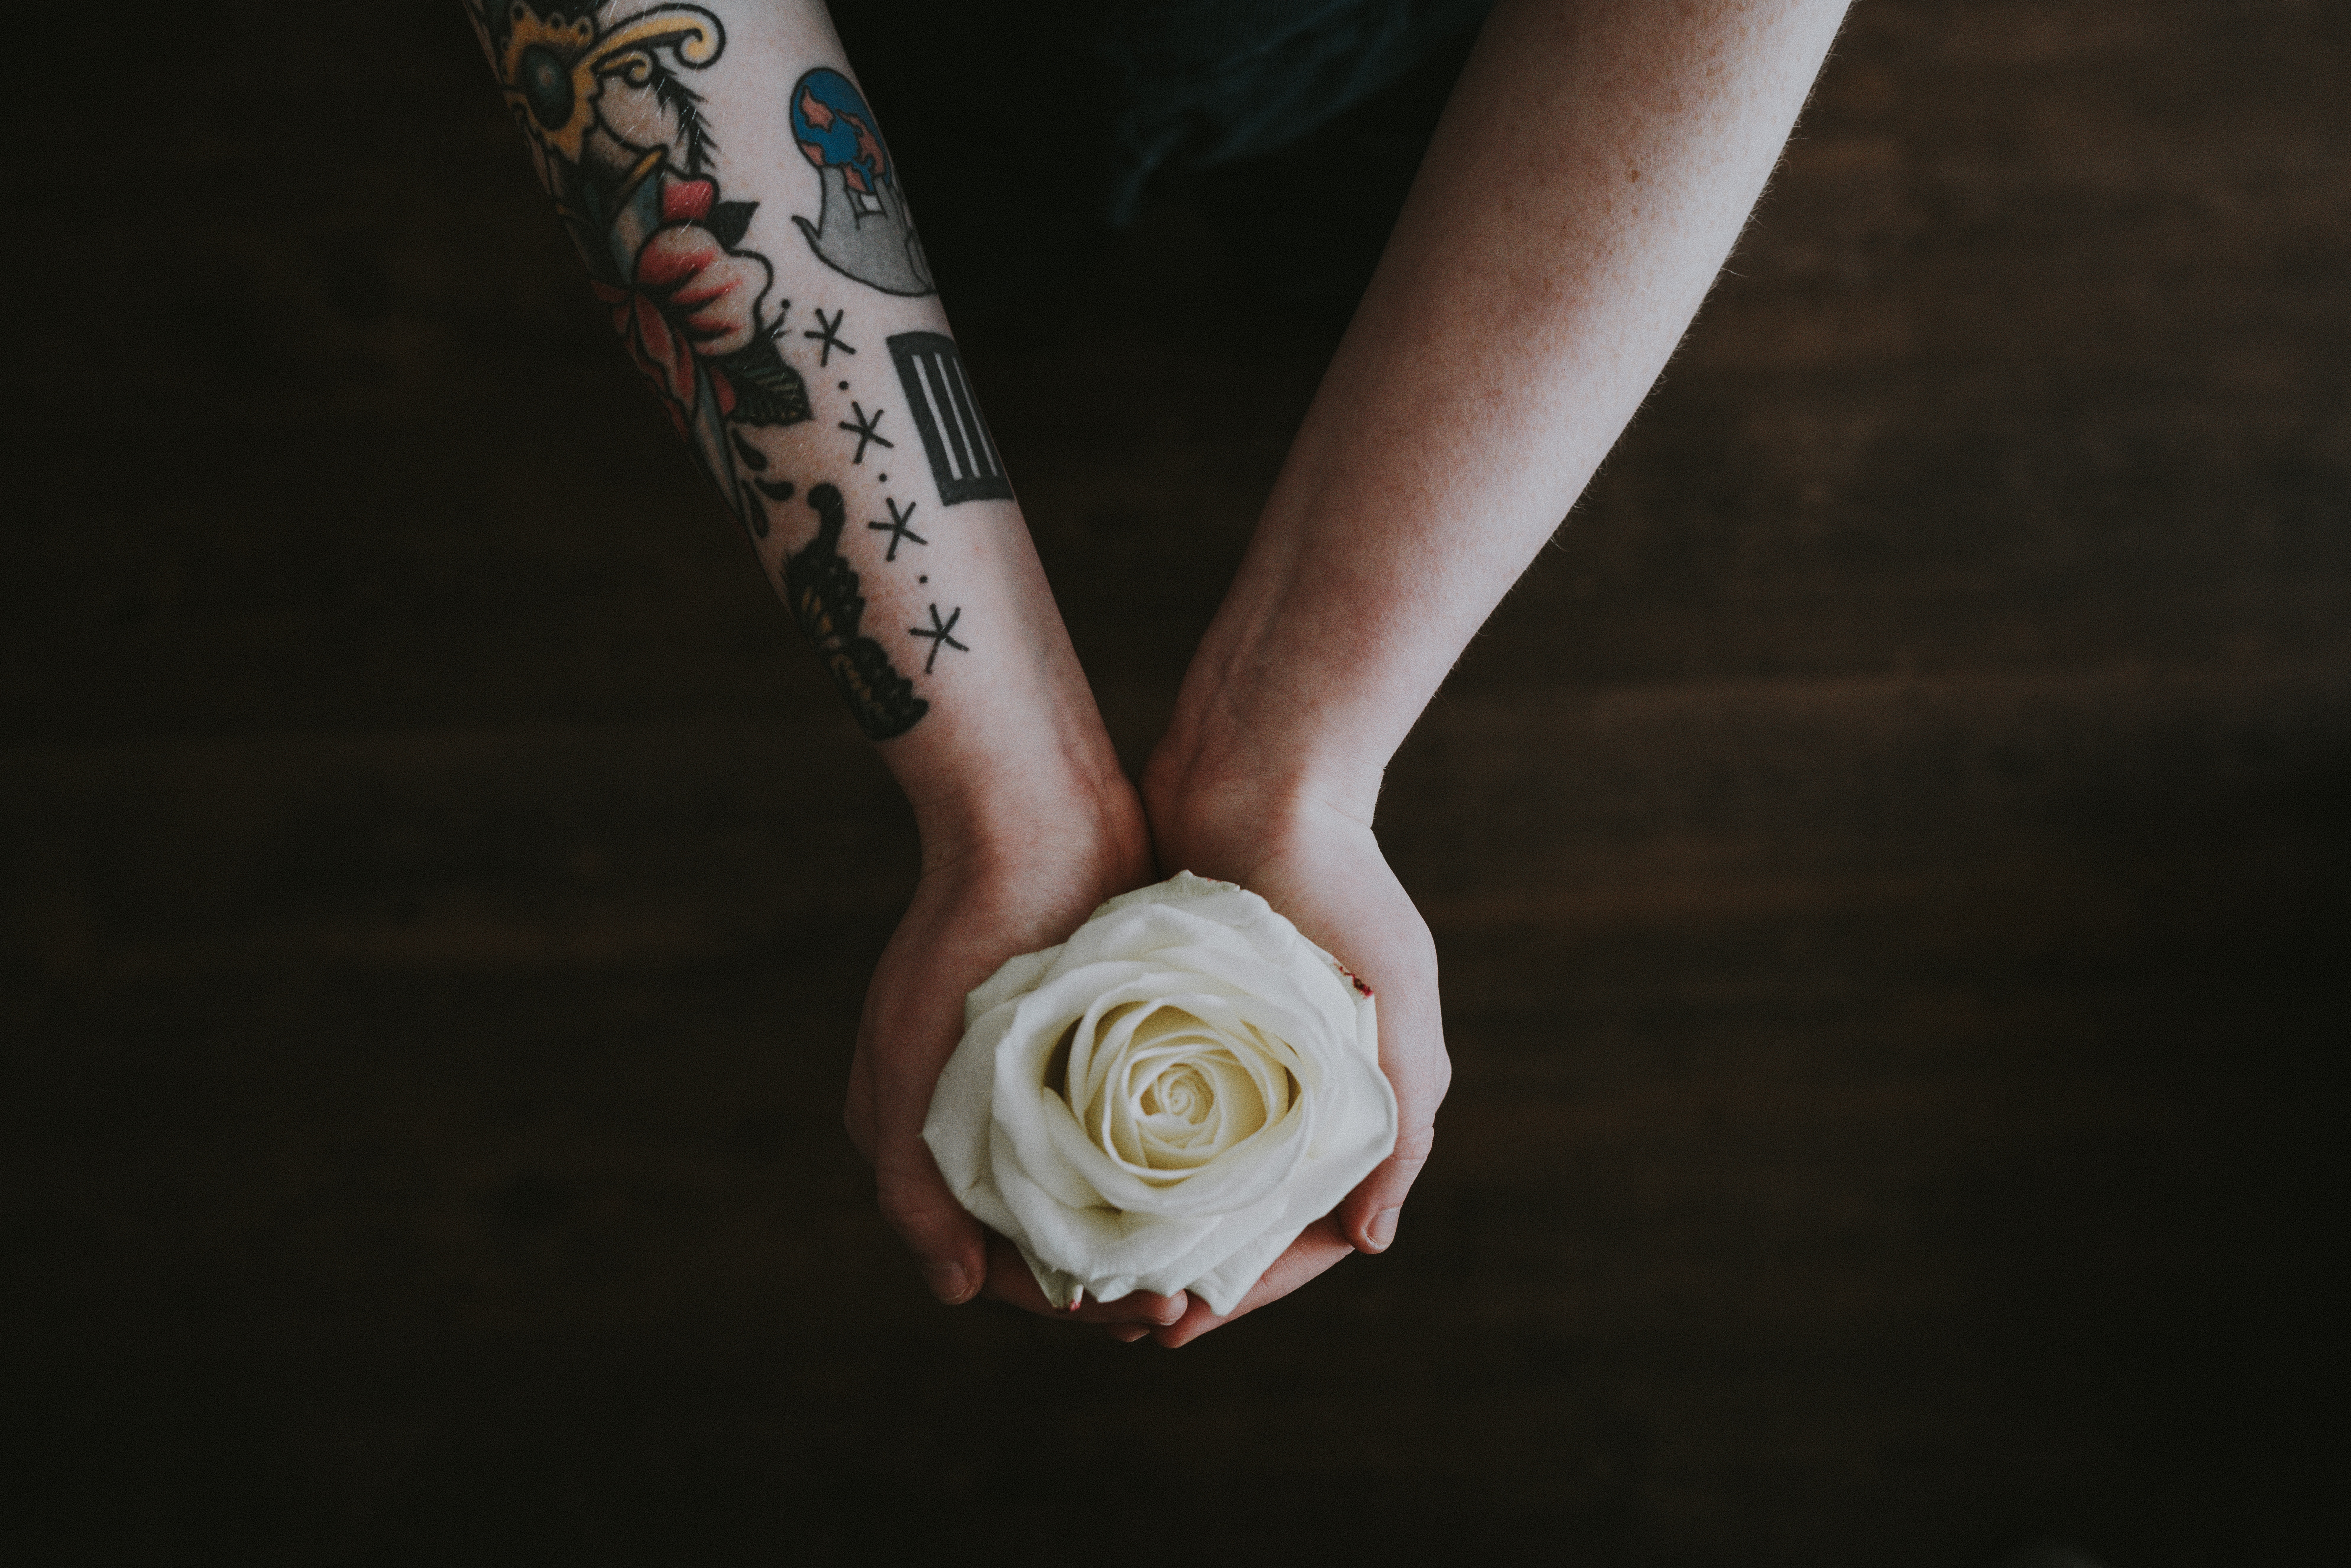 desktop Images rose, flowers, flower, rose flower, bud, hands, tattoo